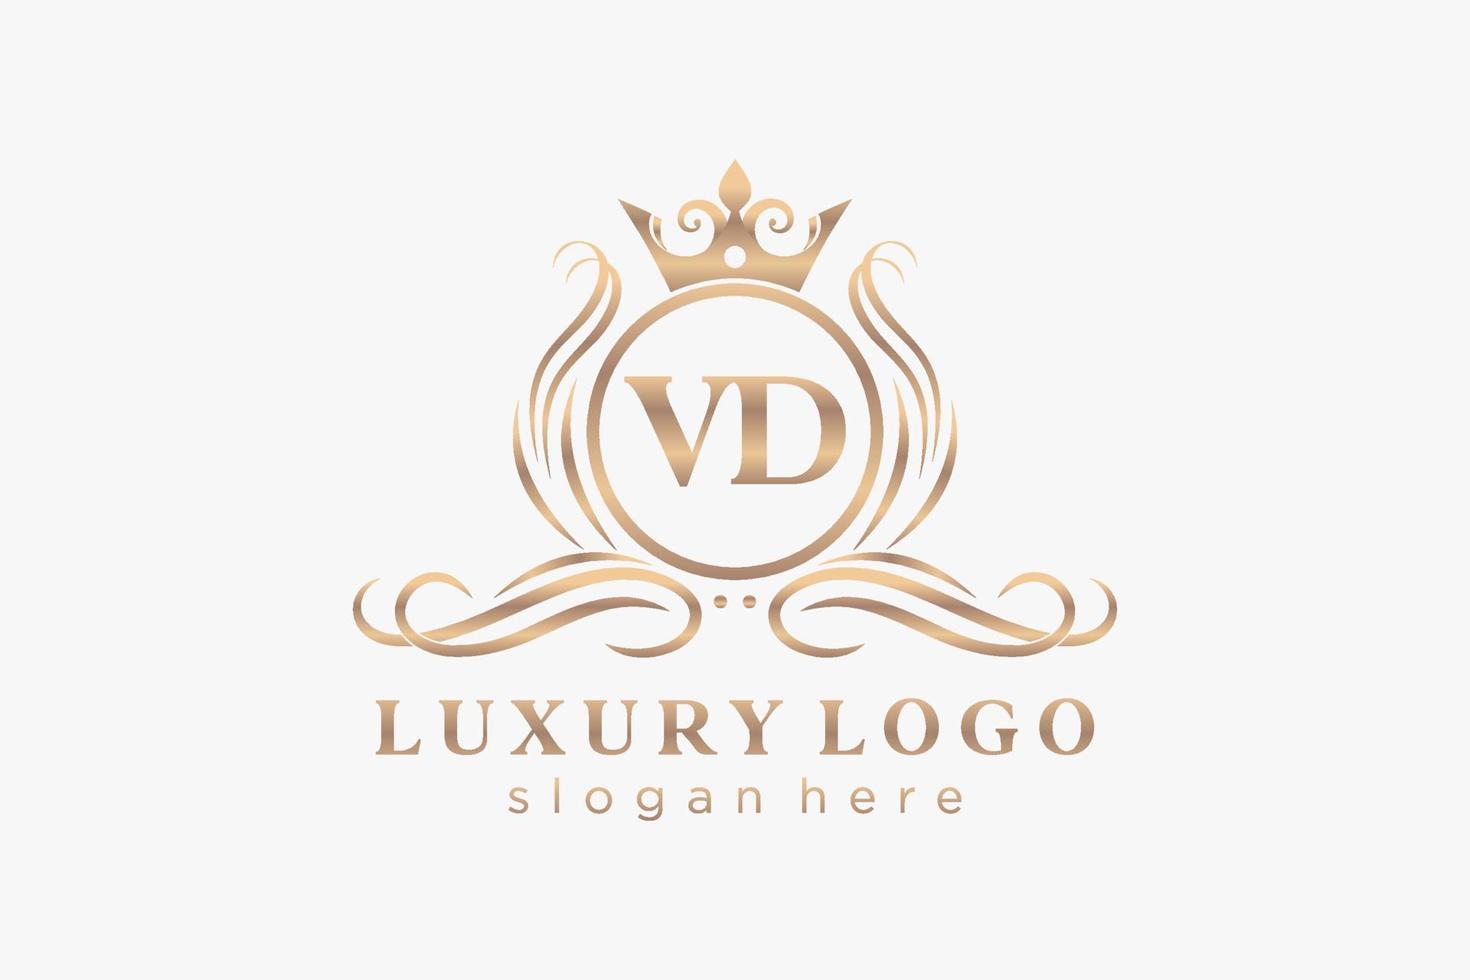 modèle de logo de luxe royal de lettre vd initiale dans l'art vectoriel pour le restaurant, la royauté, la boutique, le café, l'hôtel, l'héraldique, les bijoux, la mode et d'autres illustrations vectorielles.